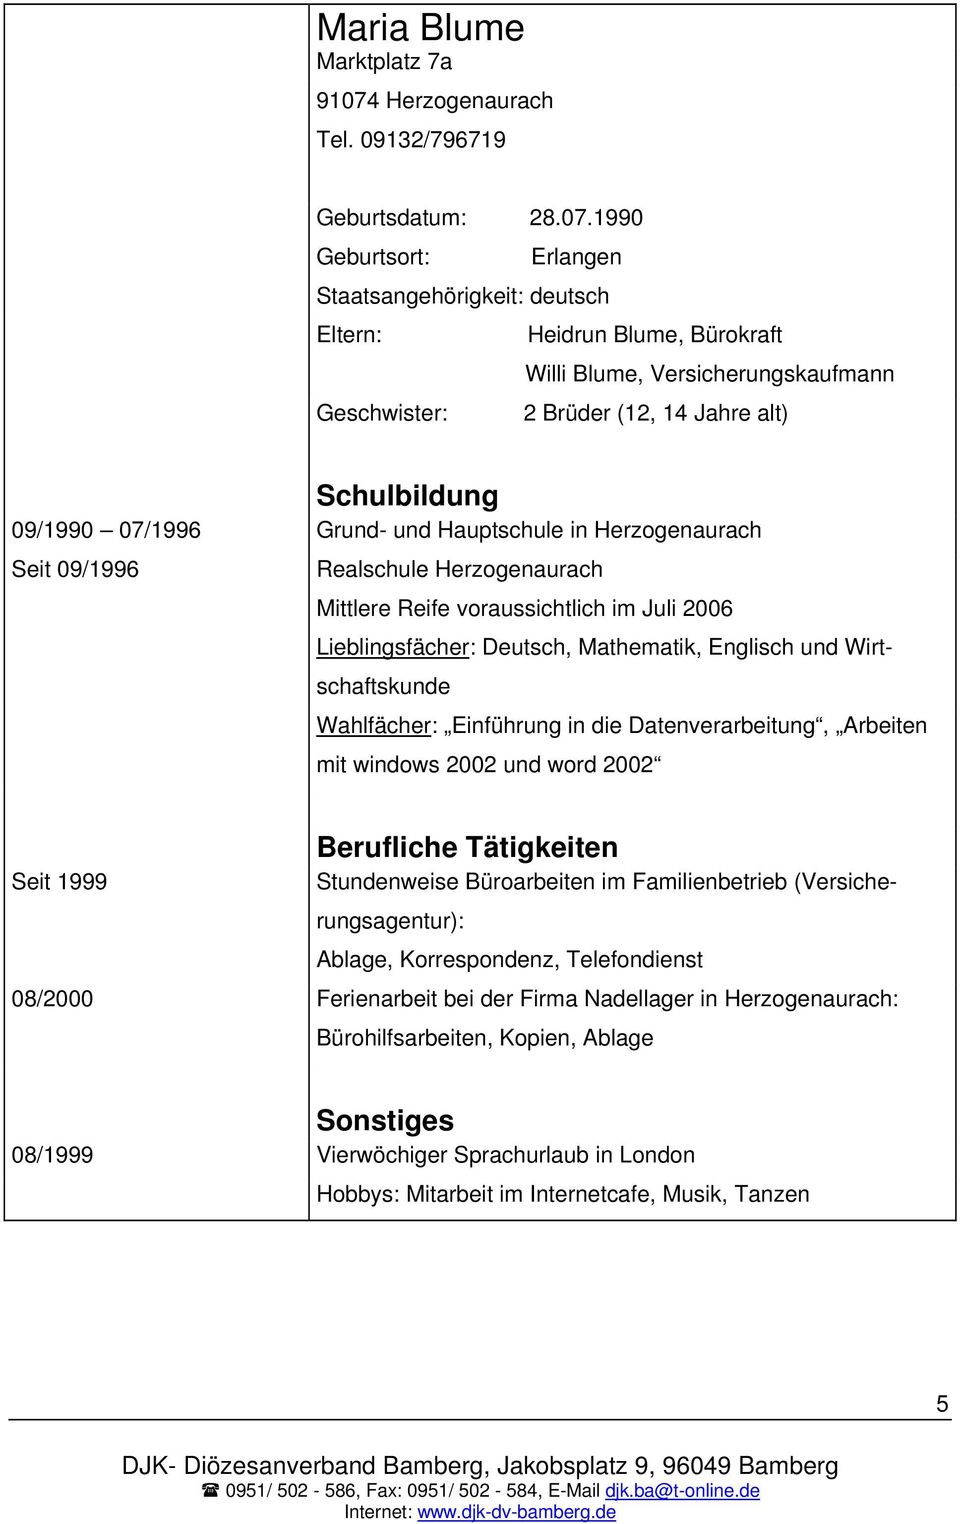 und Hauptschule in Herzogenaurach Seit 09/1996 Realschule Herzogenaurach Mittlere Reife voraussichtlich im Juli 2006 Lieblingsfächer: Deutsch, Mathematik, Englisch und Wirtschaftskunde Wahlfächer: